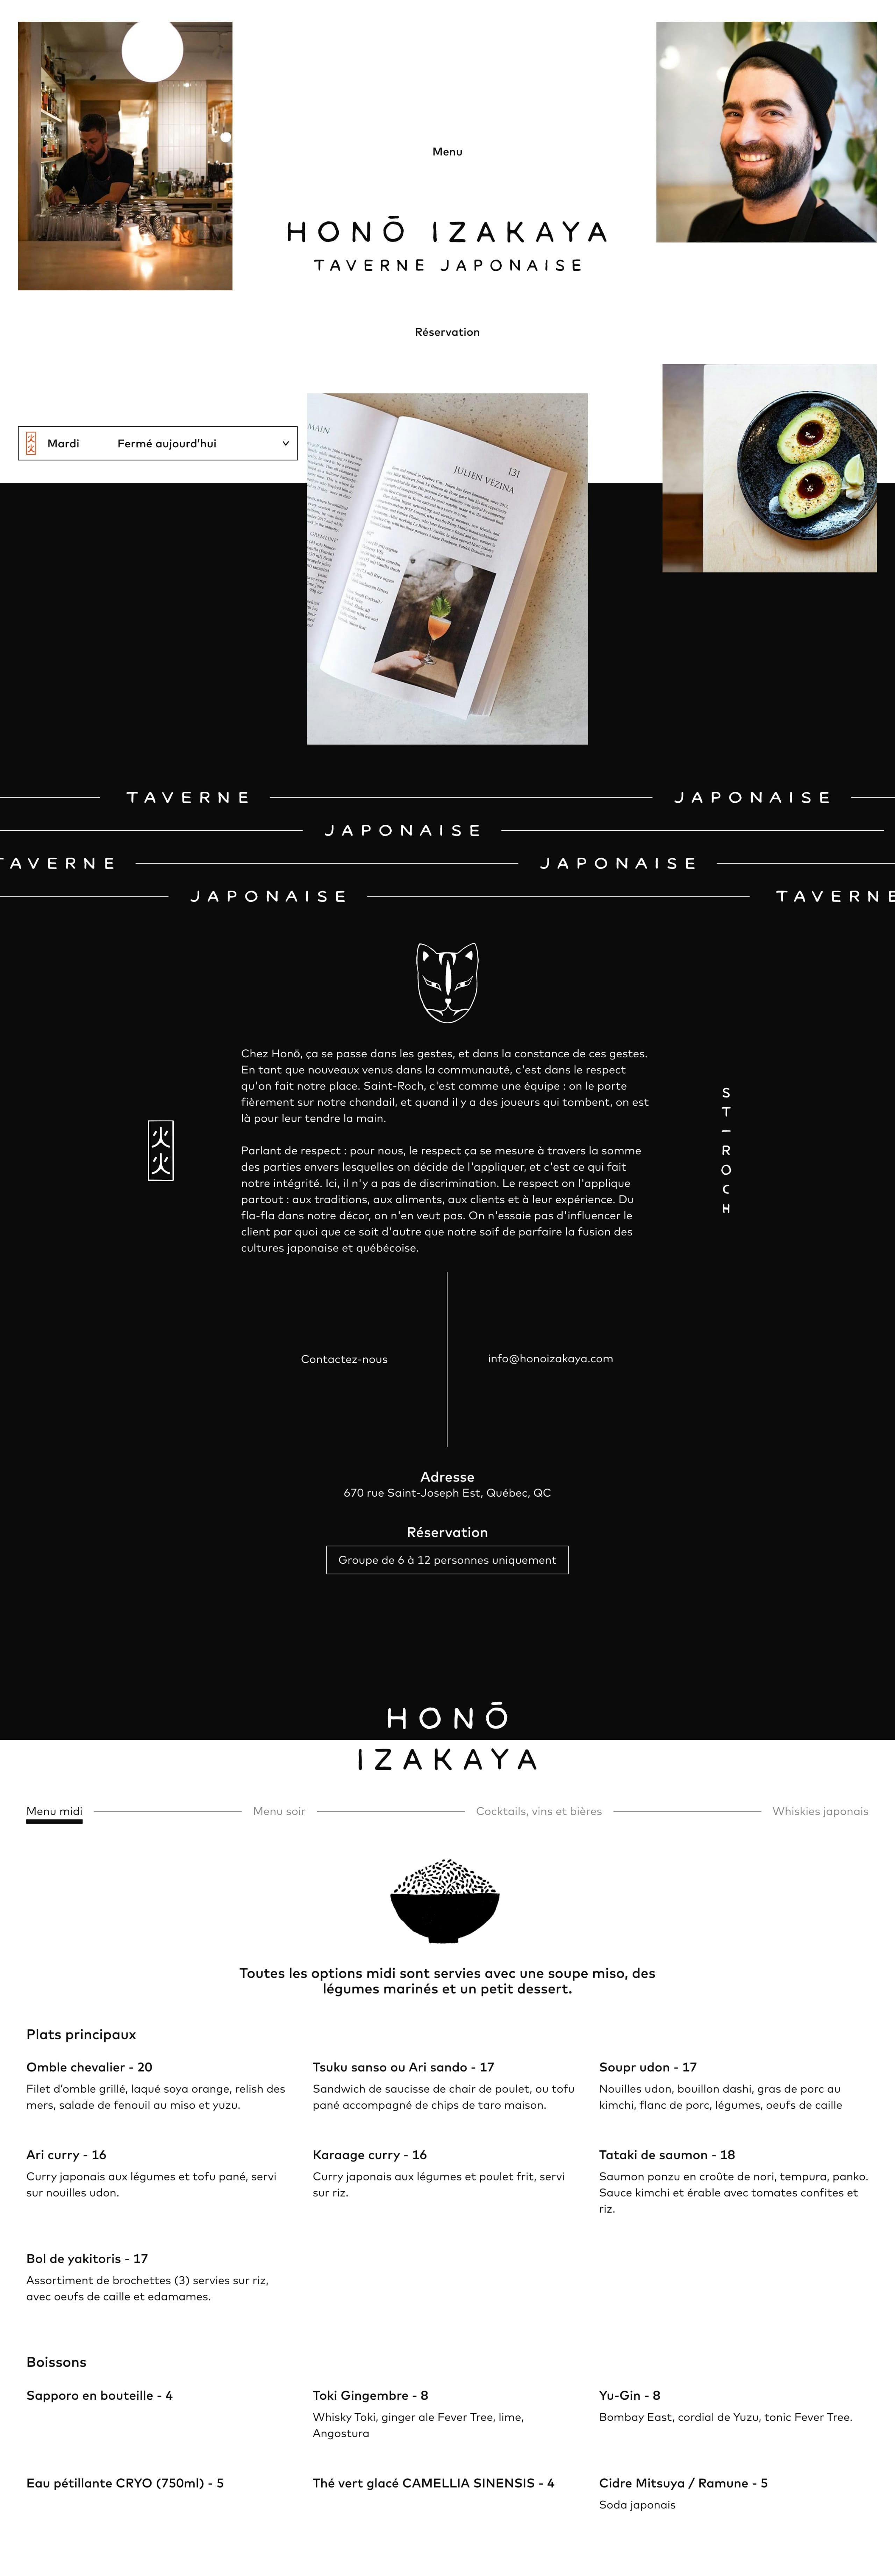 Hono Izakaya Website Screenshot